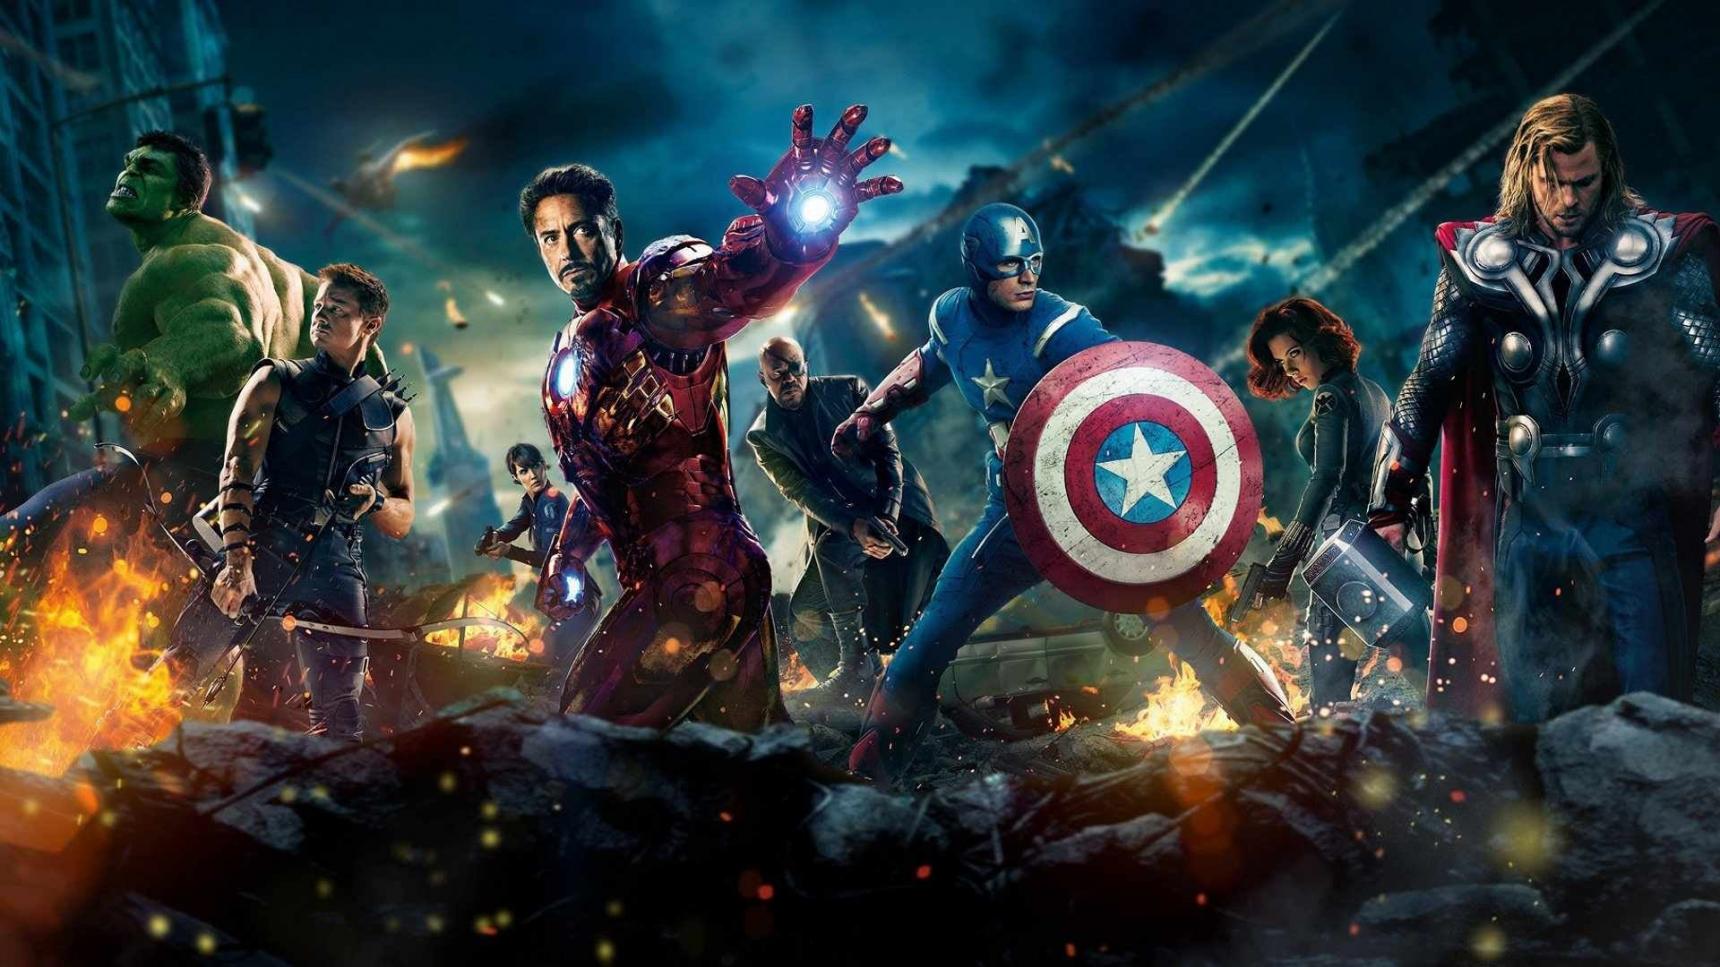 poster de The Avengers (Los vengadores)